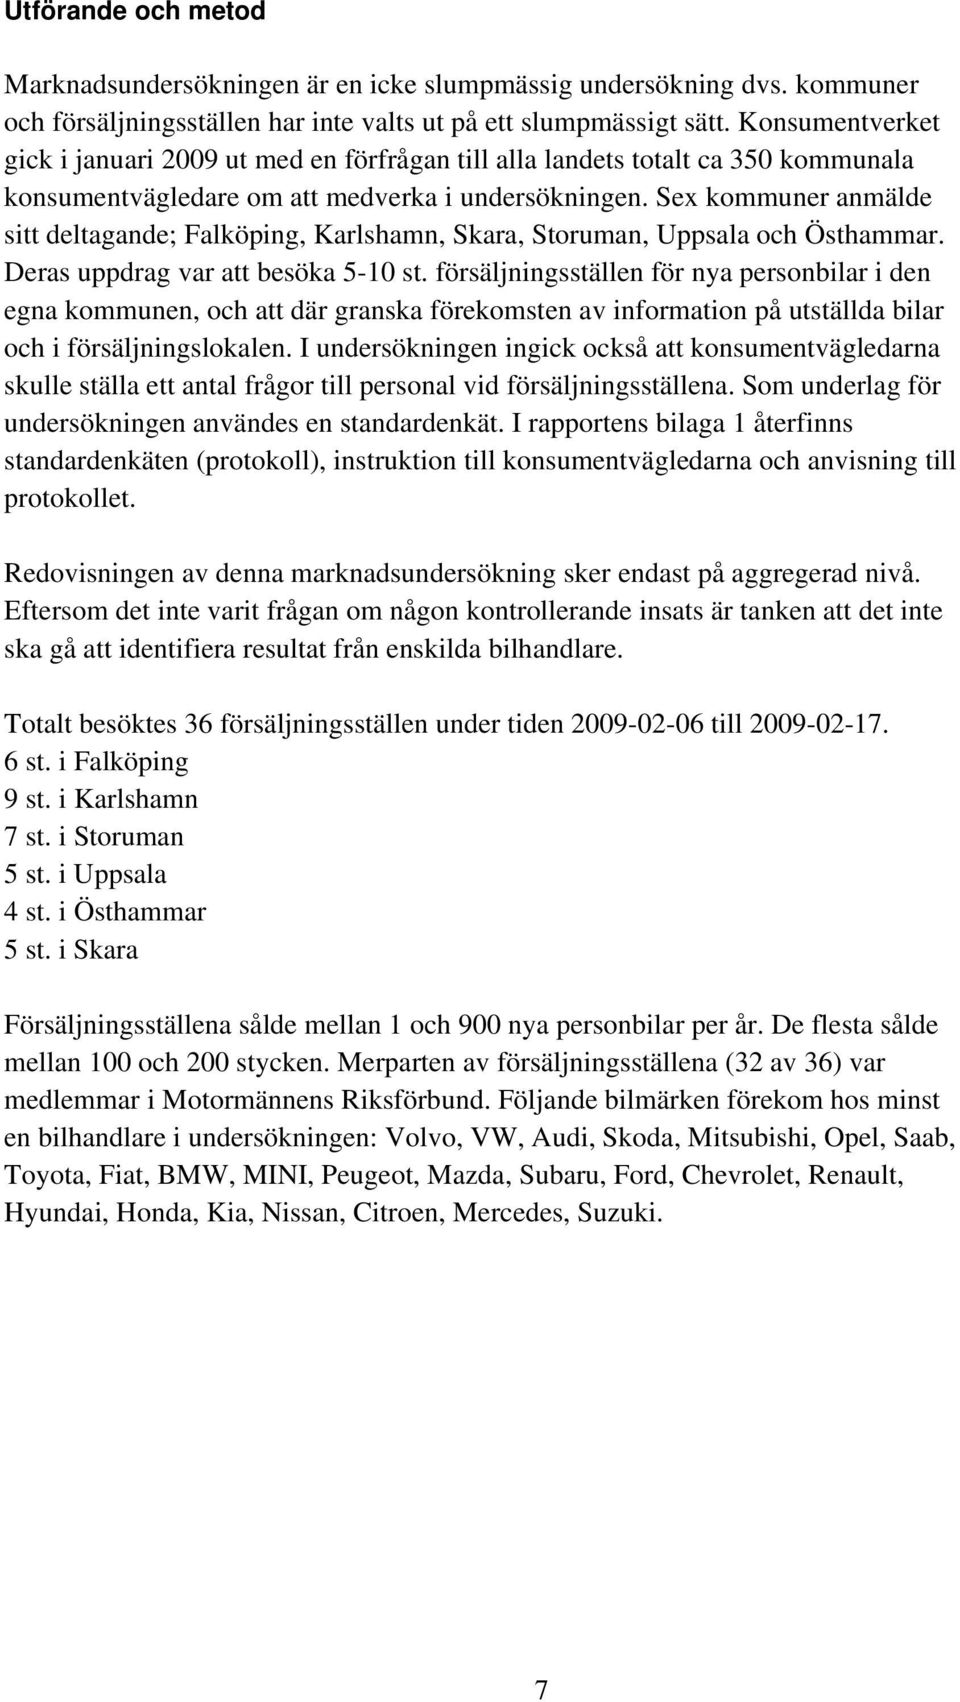 Sex kommuner anmälde sitt deltagande; Falköping, Karlshamn, Skara, Storuman, Uppsala och Östhammar. Deras uppdrag var att besöka 5-10 st.